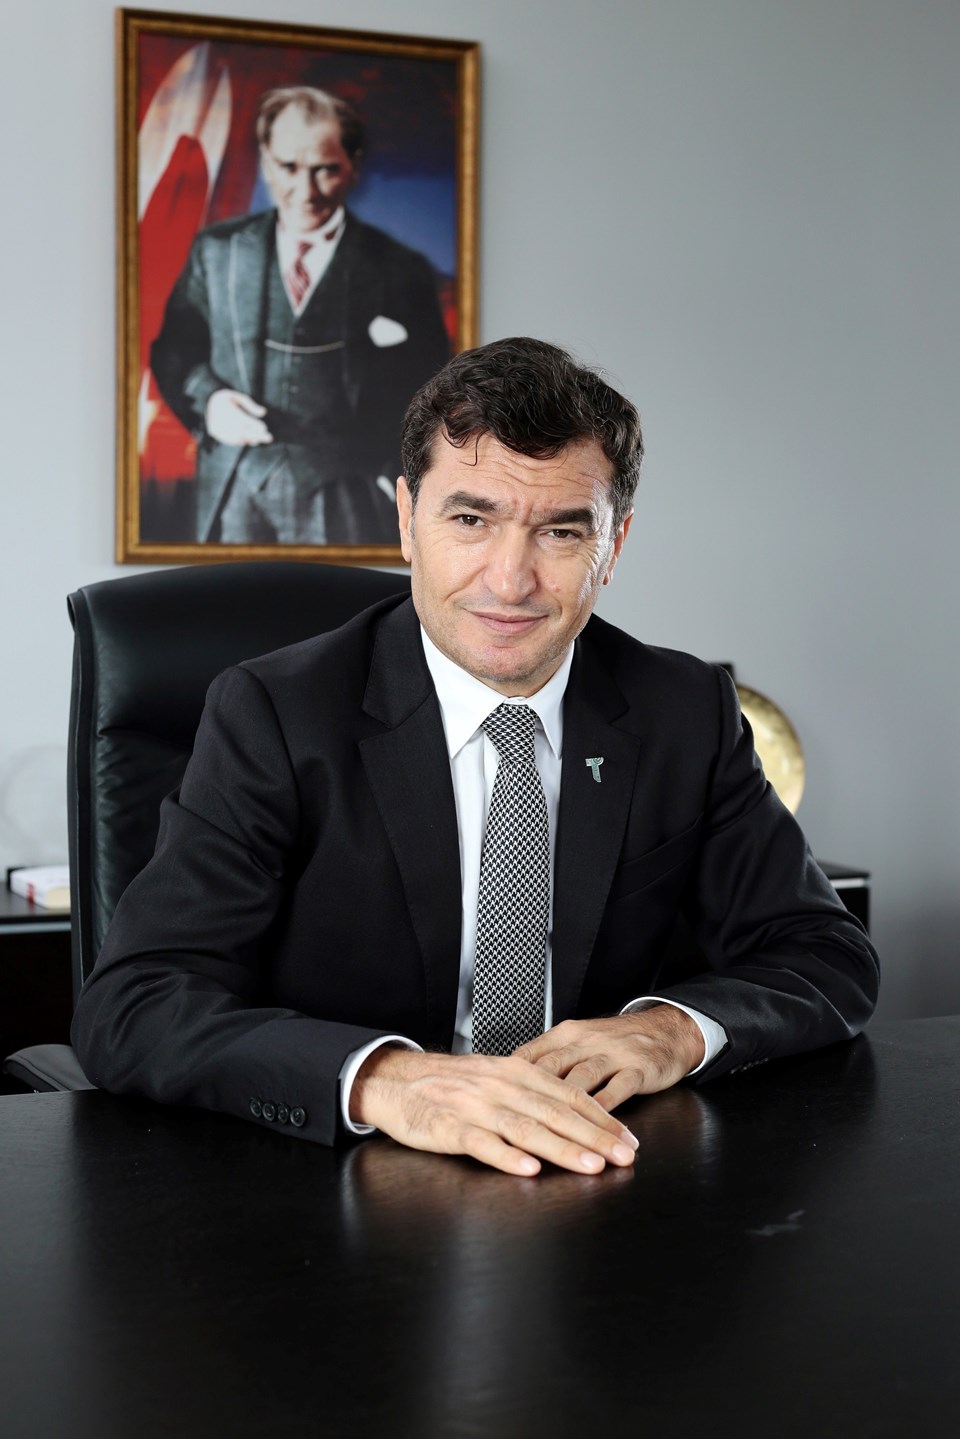 İstanbul Mobilya, Kağıt ve Orman Ürünleri İhracatçıları Birliği Yönetim Kurulu Başkanı Ahmet Güleç